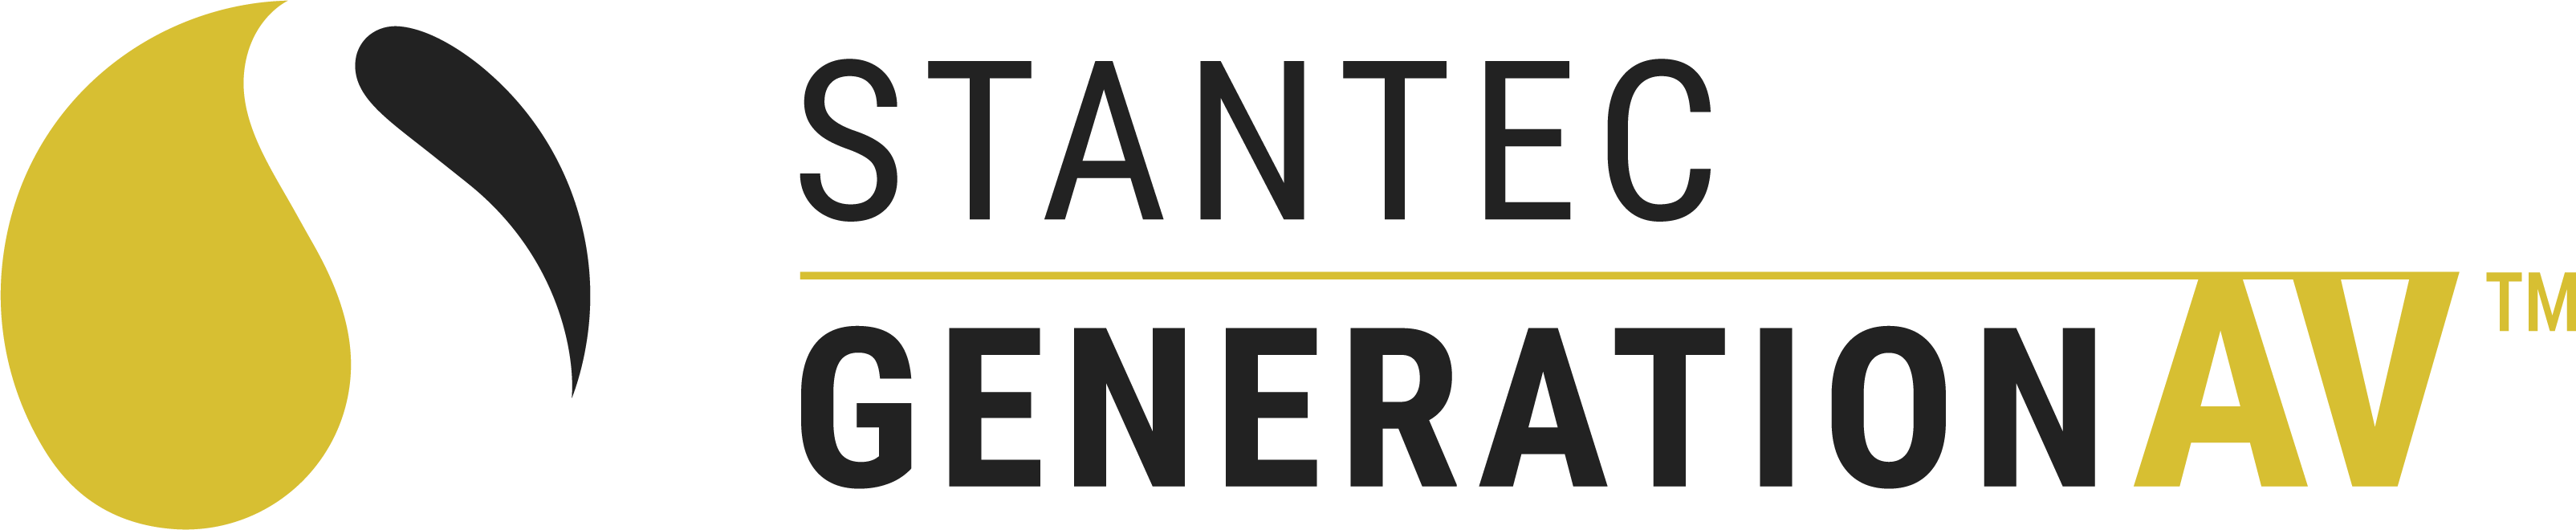 Stantec GenerationAV Logo